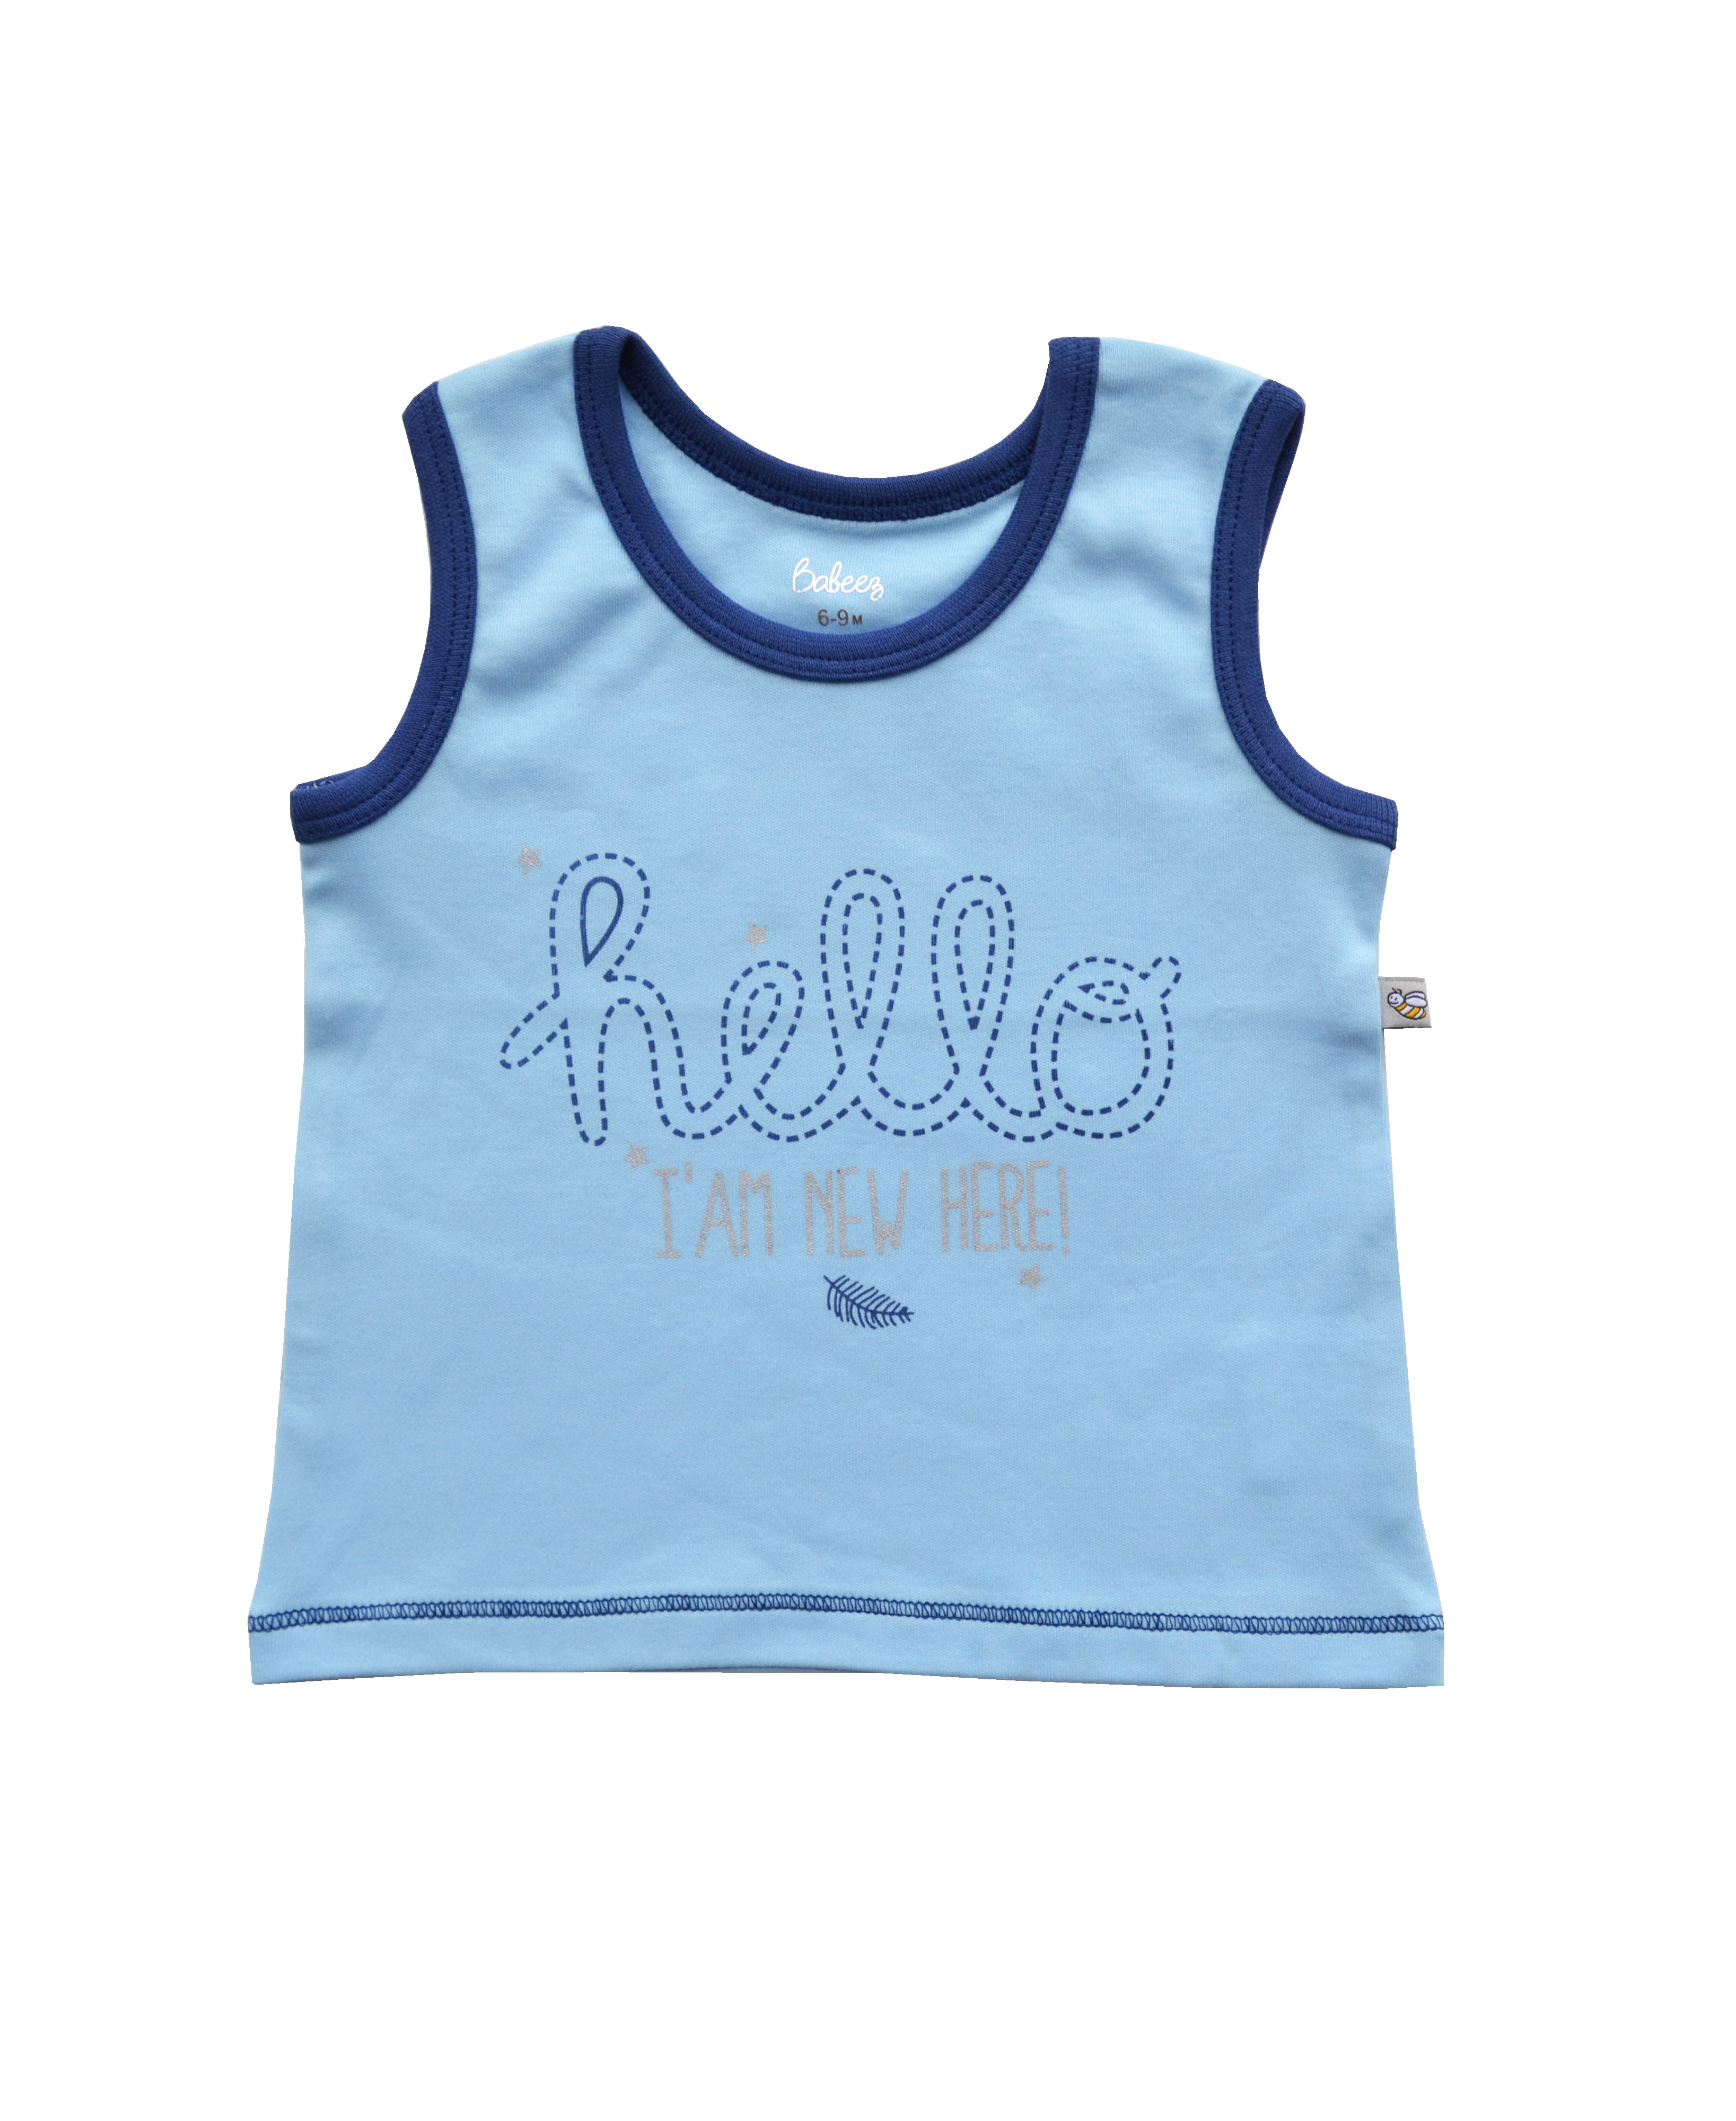 Babeez | Blue Vest with Hello Chest Print (100% Cotton Interlock Biowash) undefined